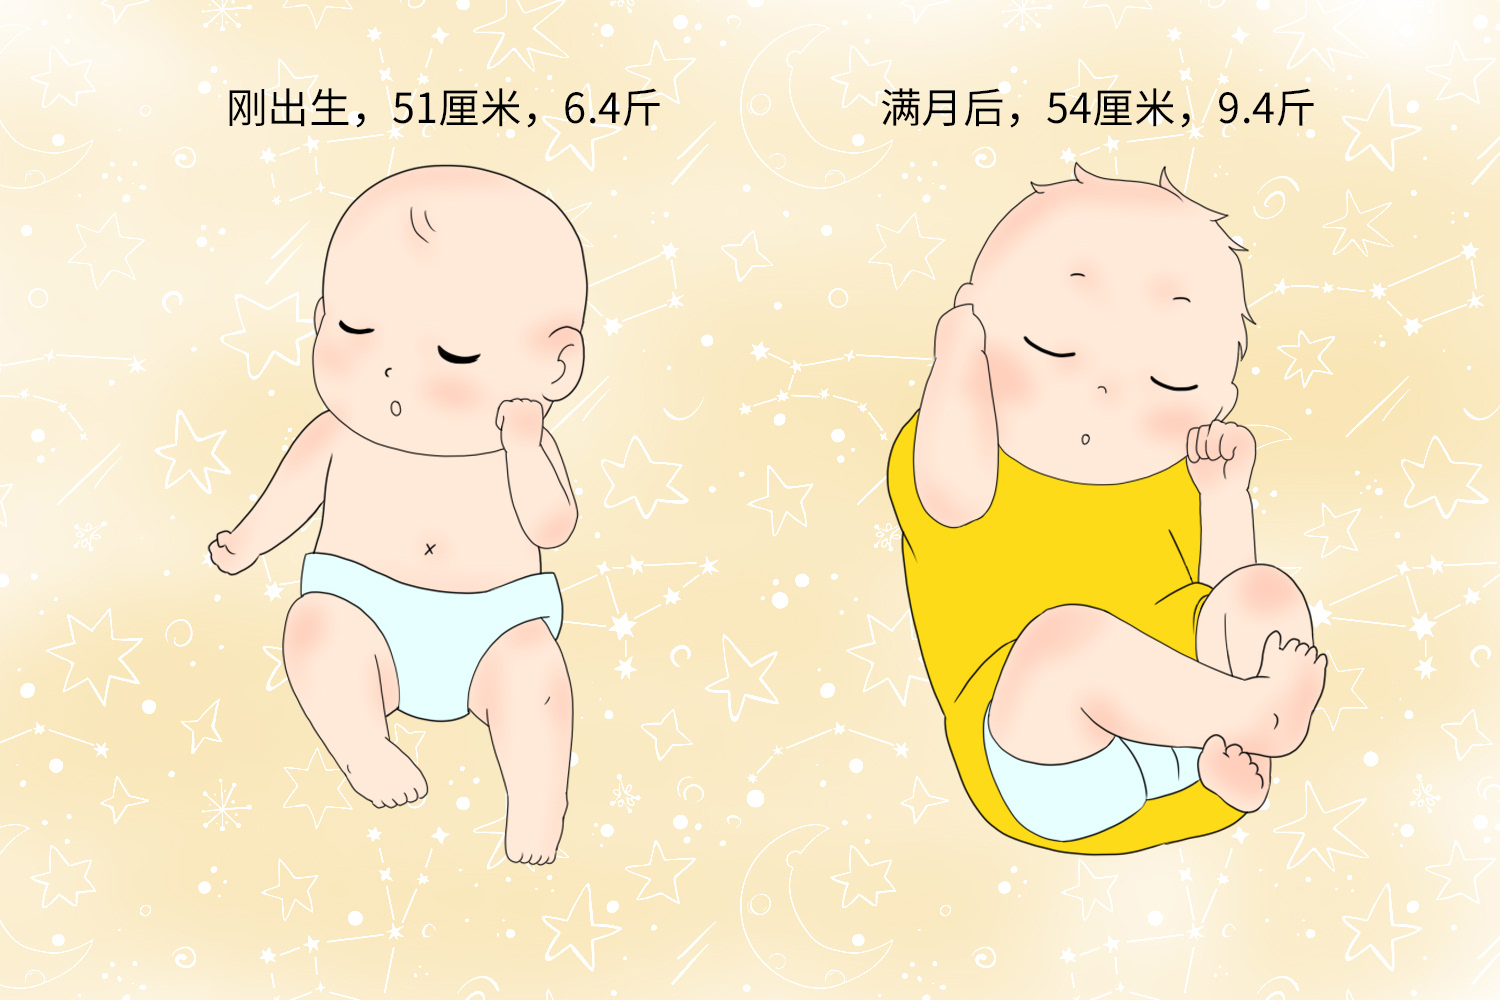 原创婴儿满月将经历3个飞速增长期脾气暴睡不好妈妈要懂安慰